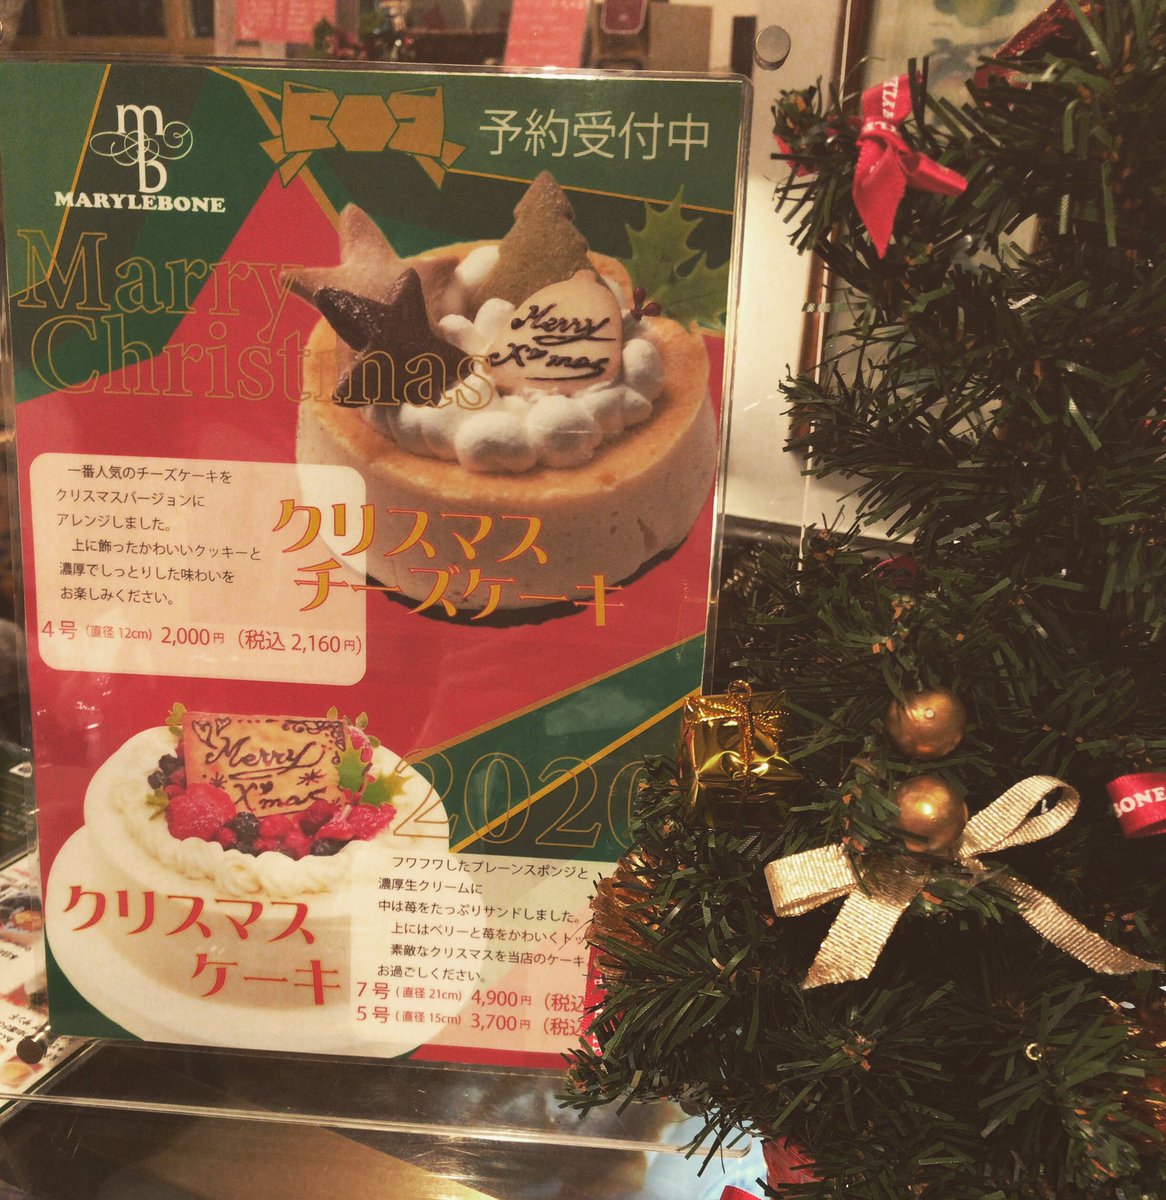 メアリルボーン野田店 こんばんわ メアリルボーン野田店です 店内本日からクリスマスの飾り付けになっております 今年も クリスマスケーキのご予約受付ております いちごのクリスマスケーキ 7号or5号 クリスマスチーズケーキ 4号 の2種類です